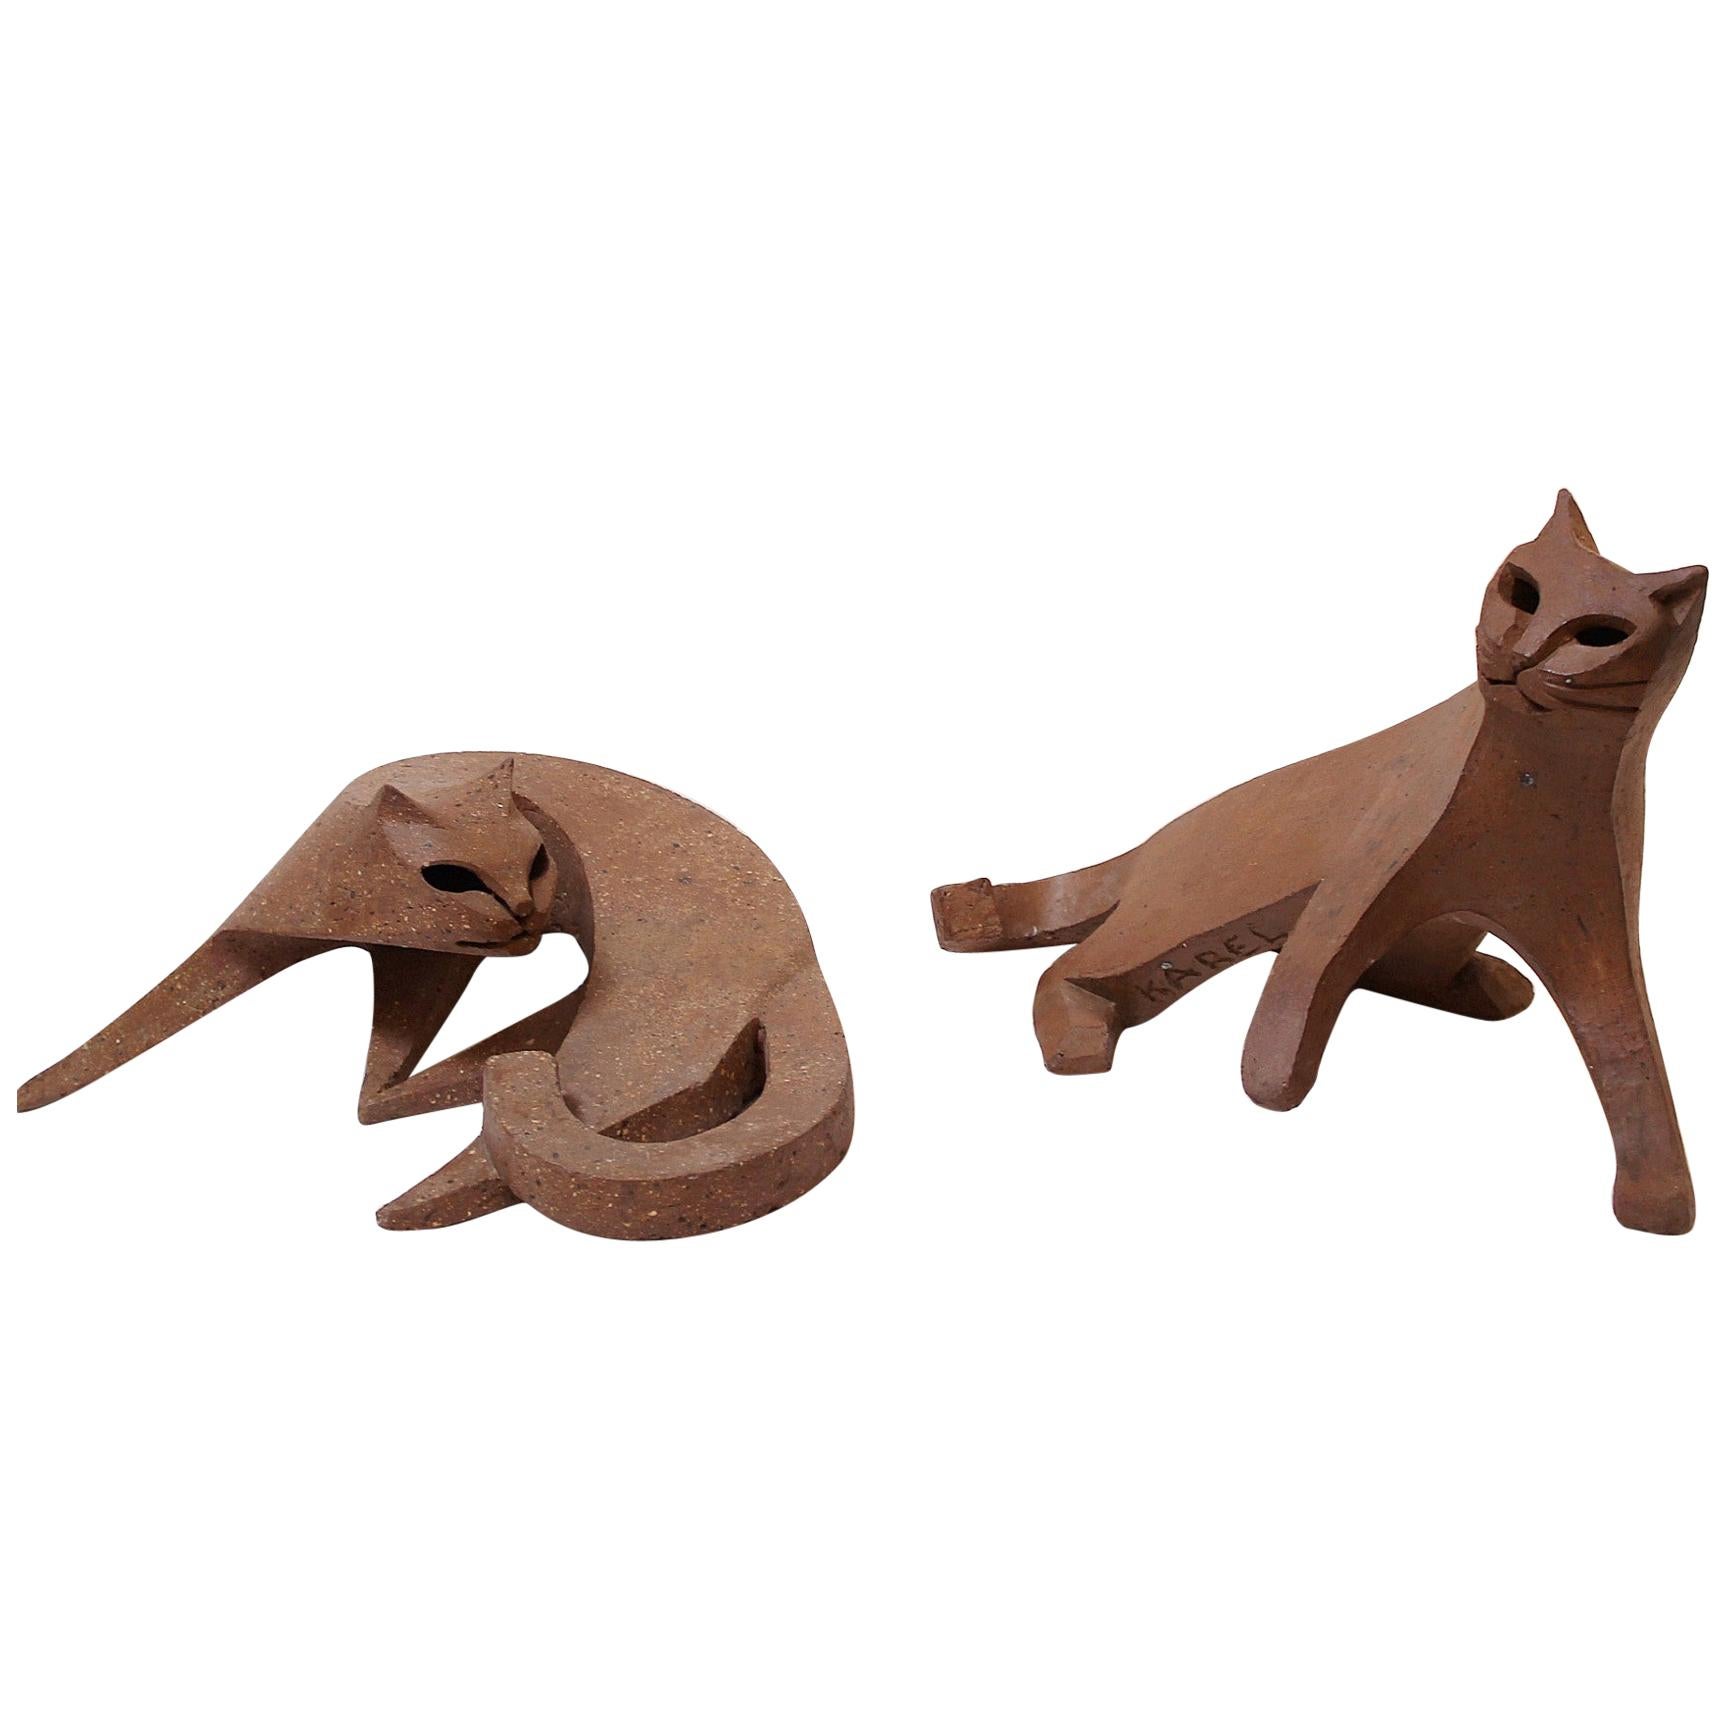 Pair of Cat Ceramic Sculpture by Karel Dupont, Belgium